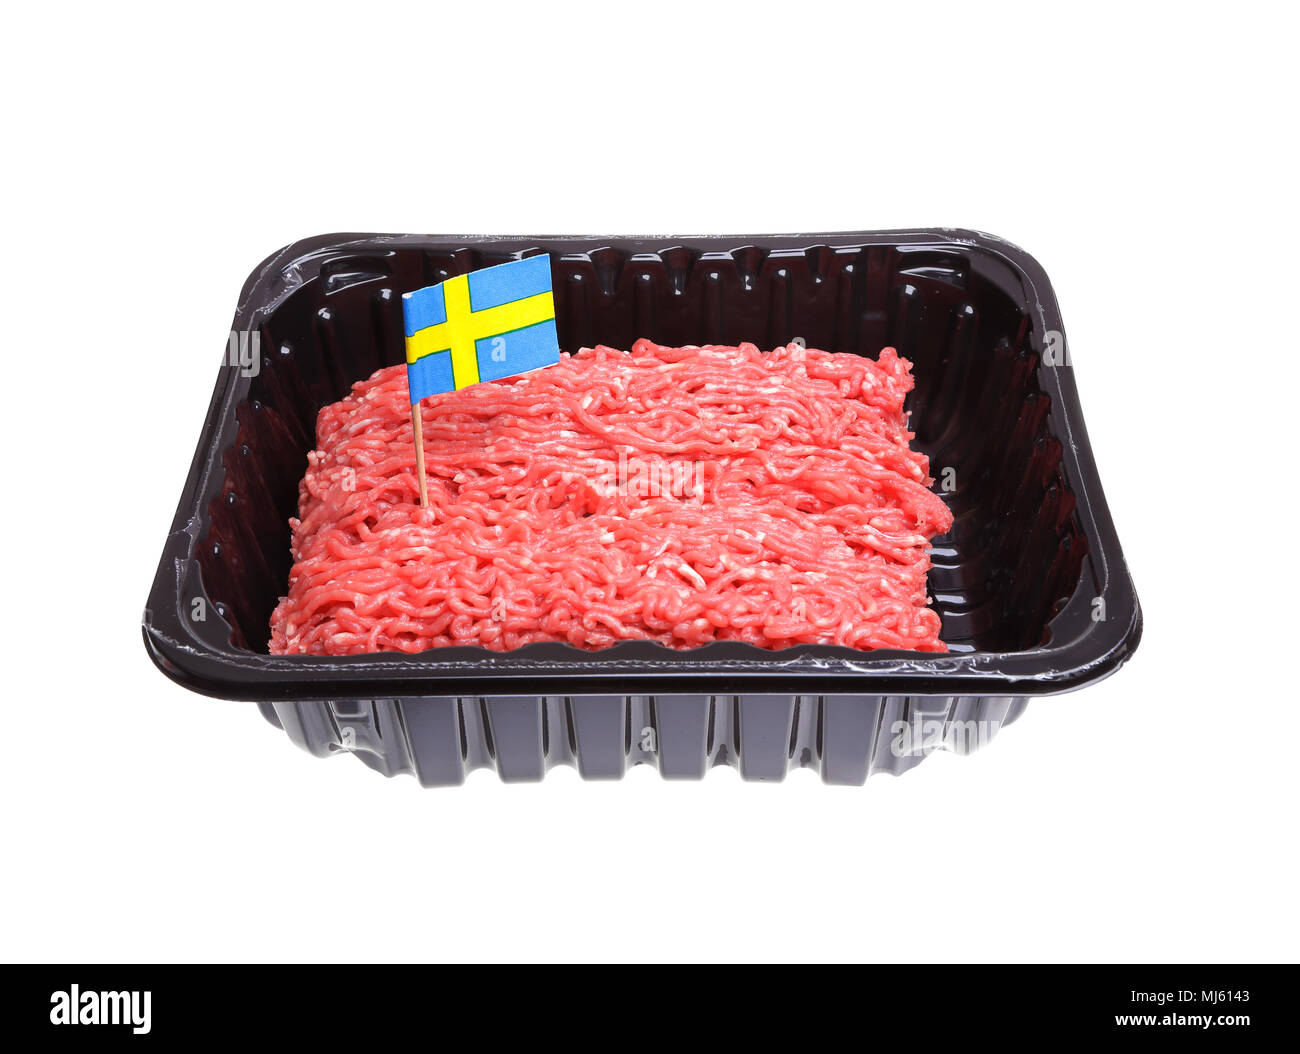 Eine Packung Rinderhack mit einem schwedischen Flagge als Ursprung Etikett, auf weißem Hintergrund eingerichtet. Stockfoto